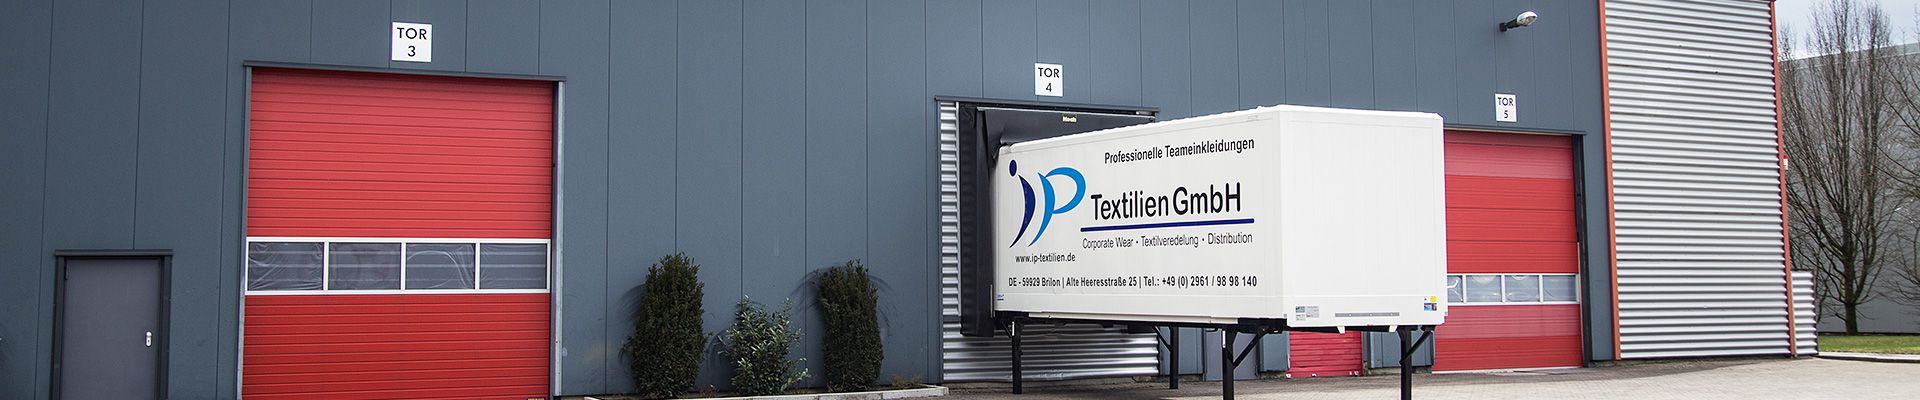 Das Unternehmen, IP Textilien GmbH